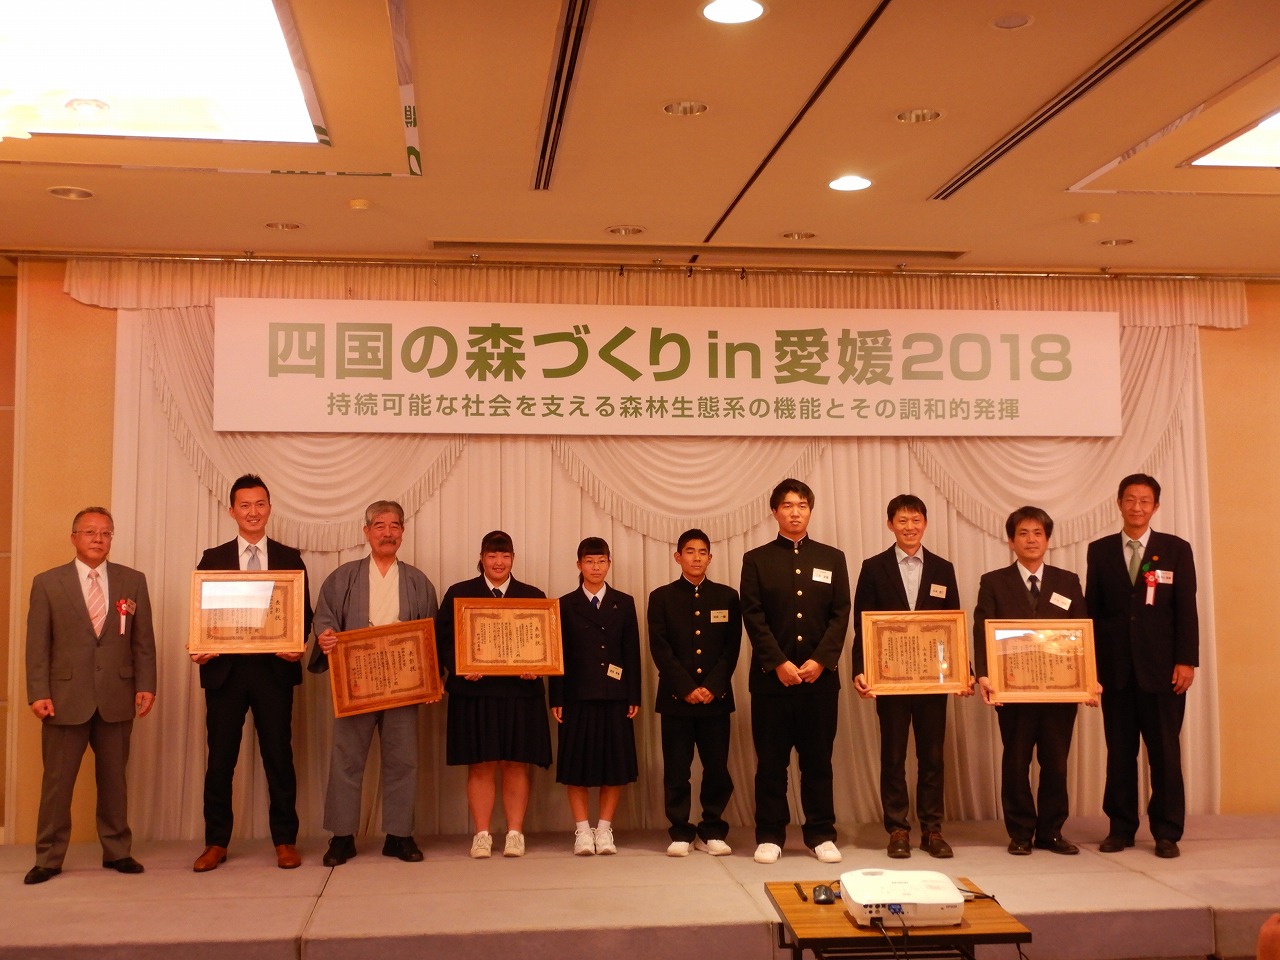 四国山の日賞2018木材利用部門を受賞しました！